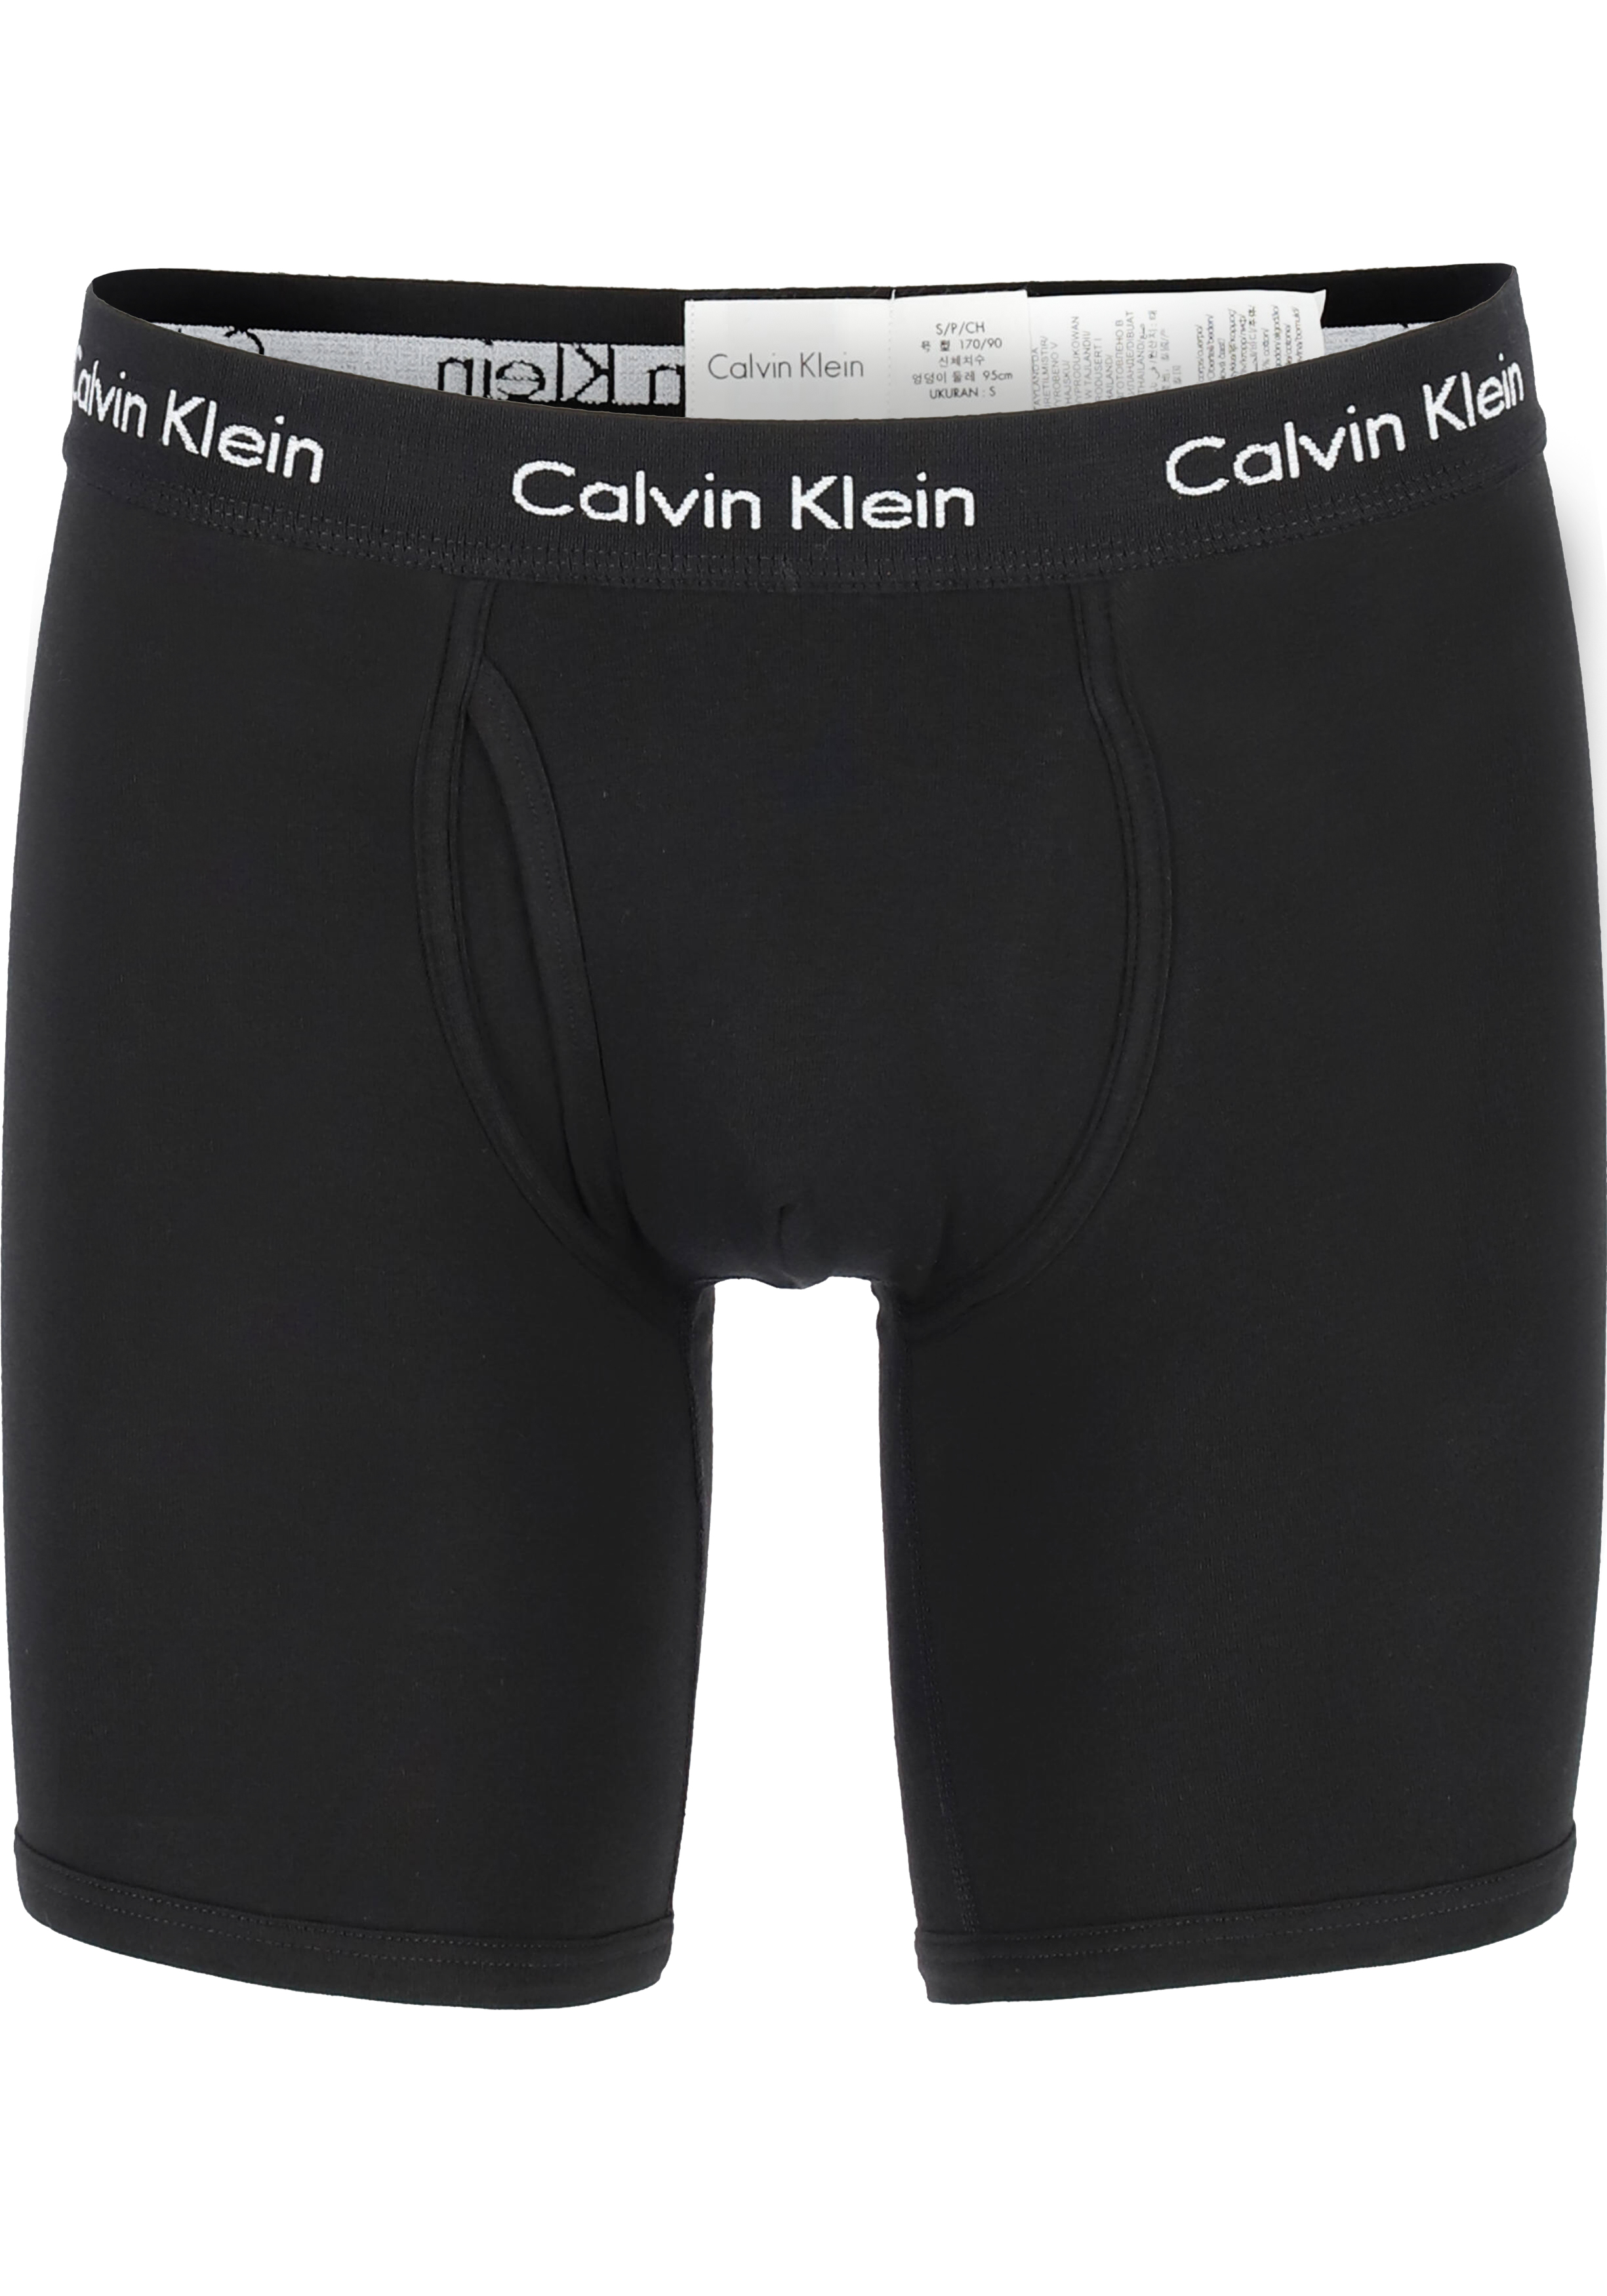 Calvin Klein Modern Essentials boxer brief (1-pack), heren boxer lang met gulp, zwart